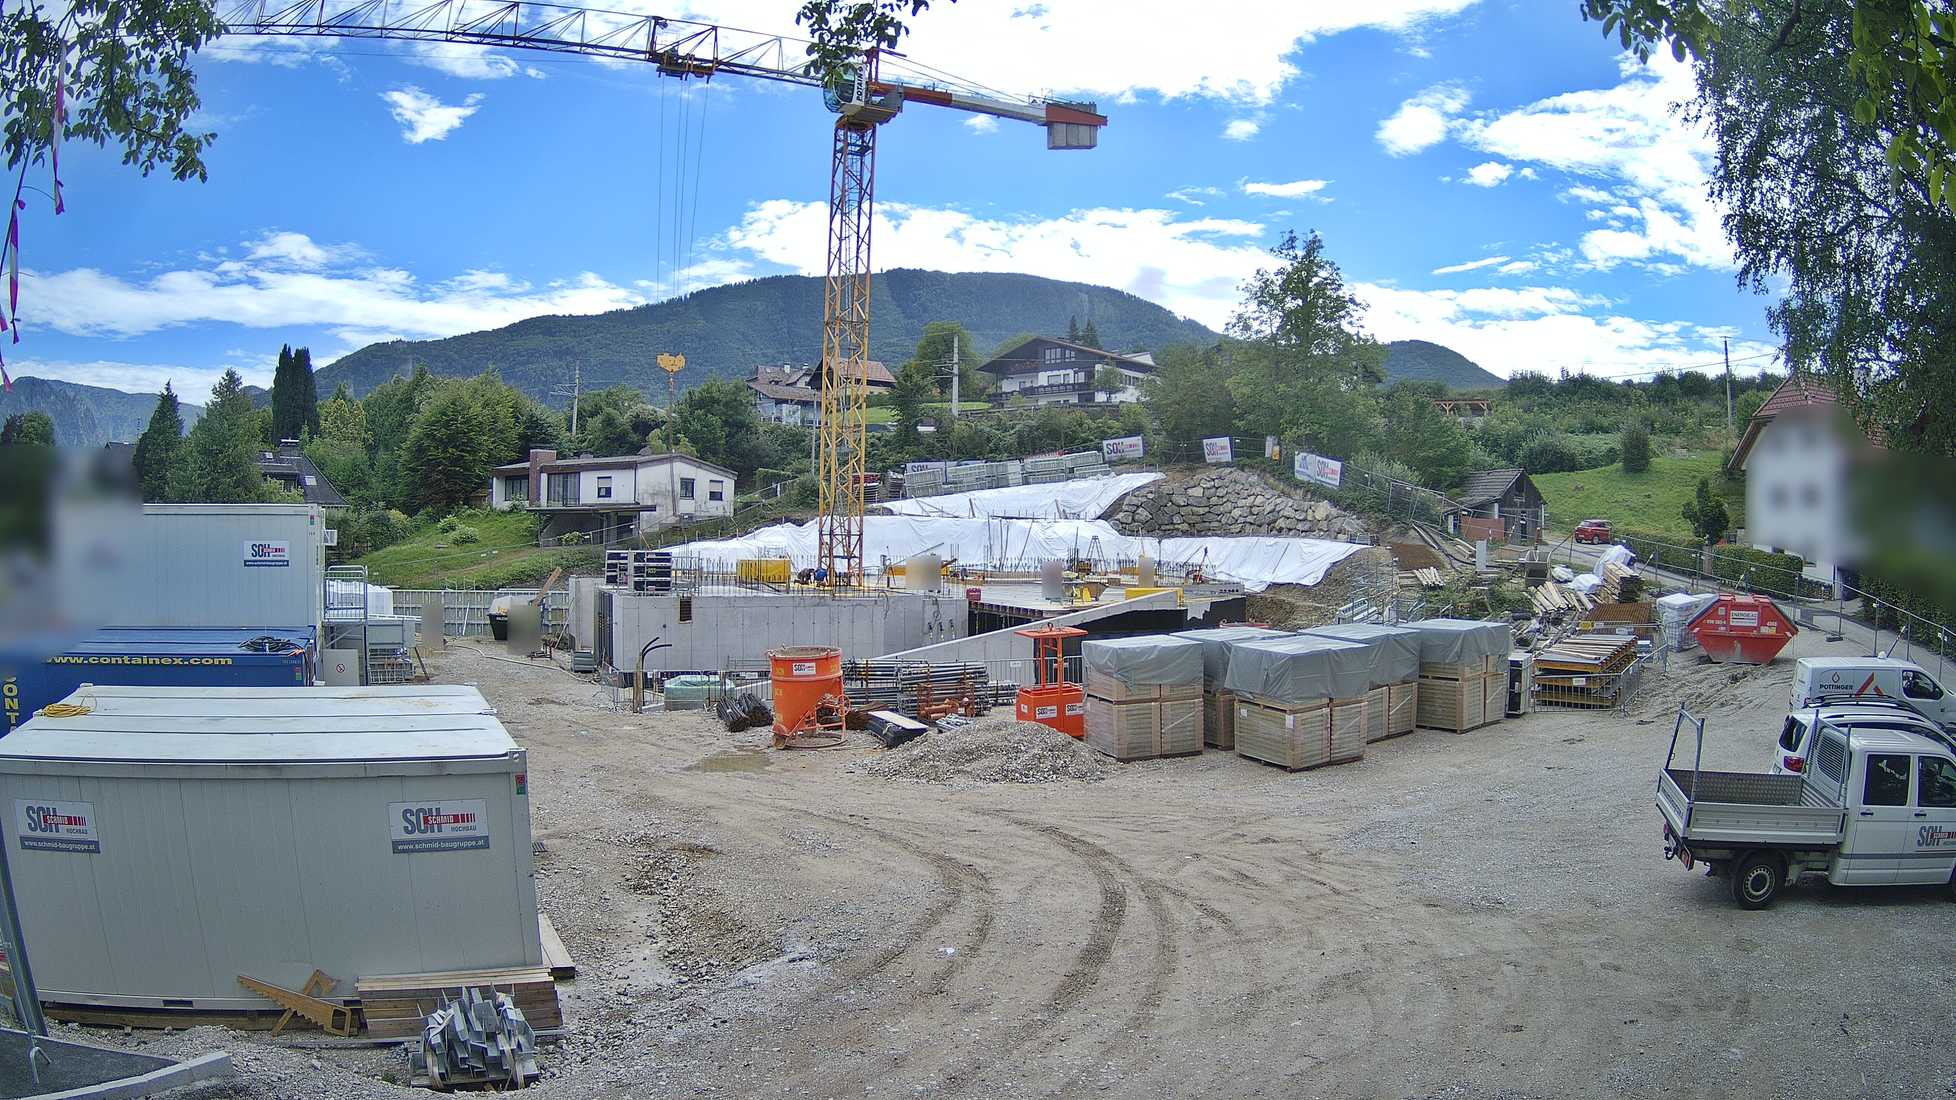 Baufortschritt am Dornbühel Traunsee Immobilien